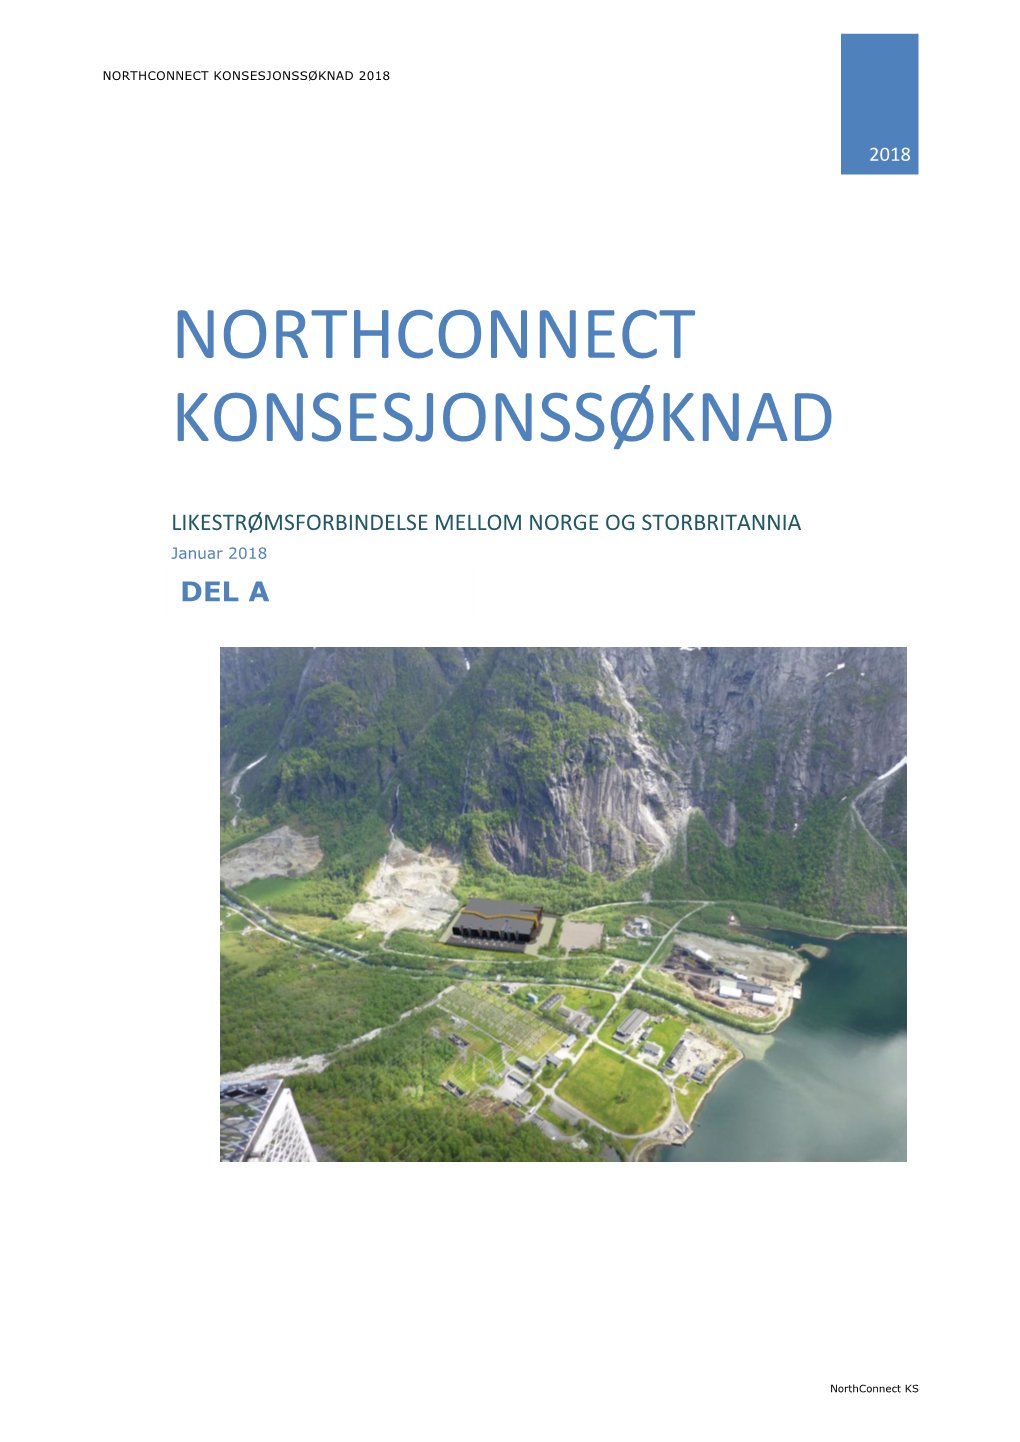 Northconnect Konsesjonssøknad 2018